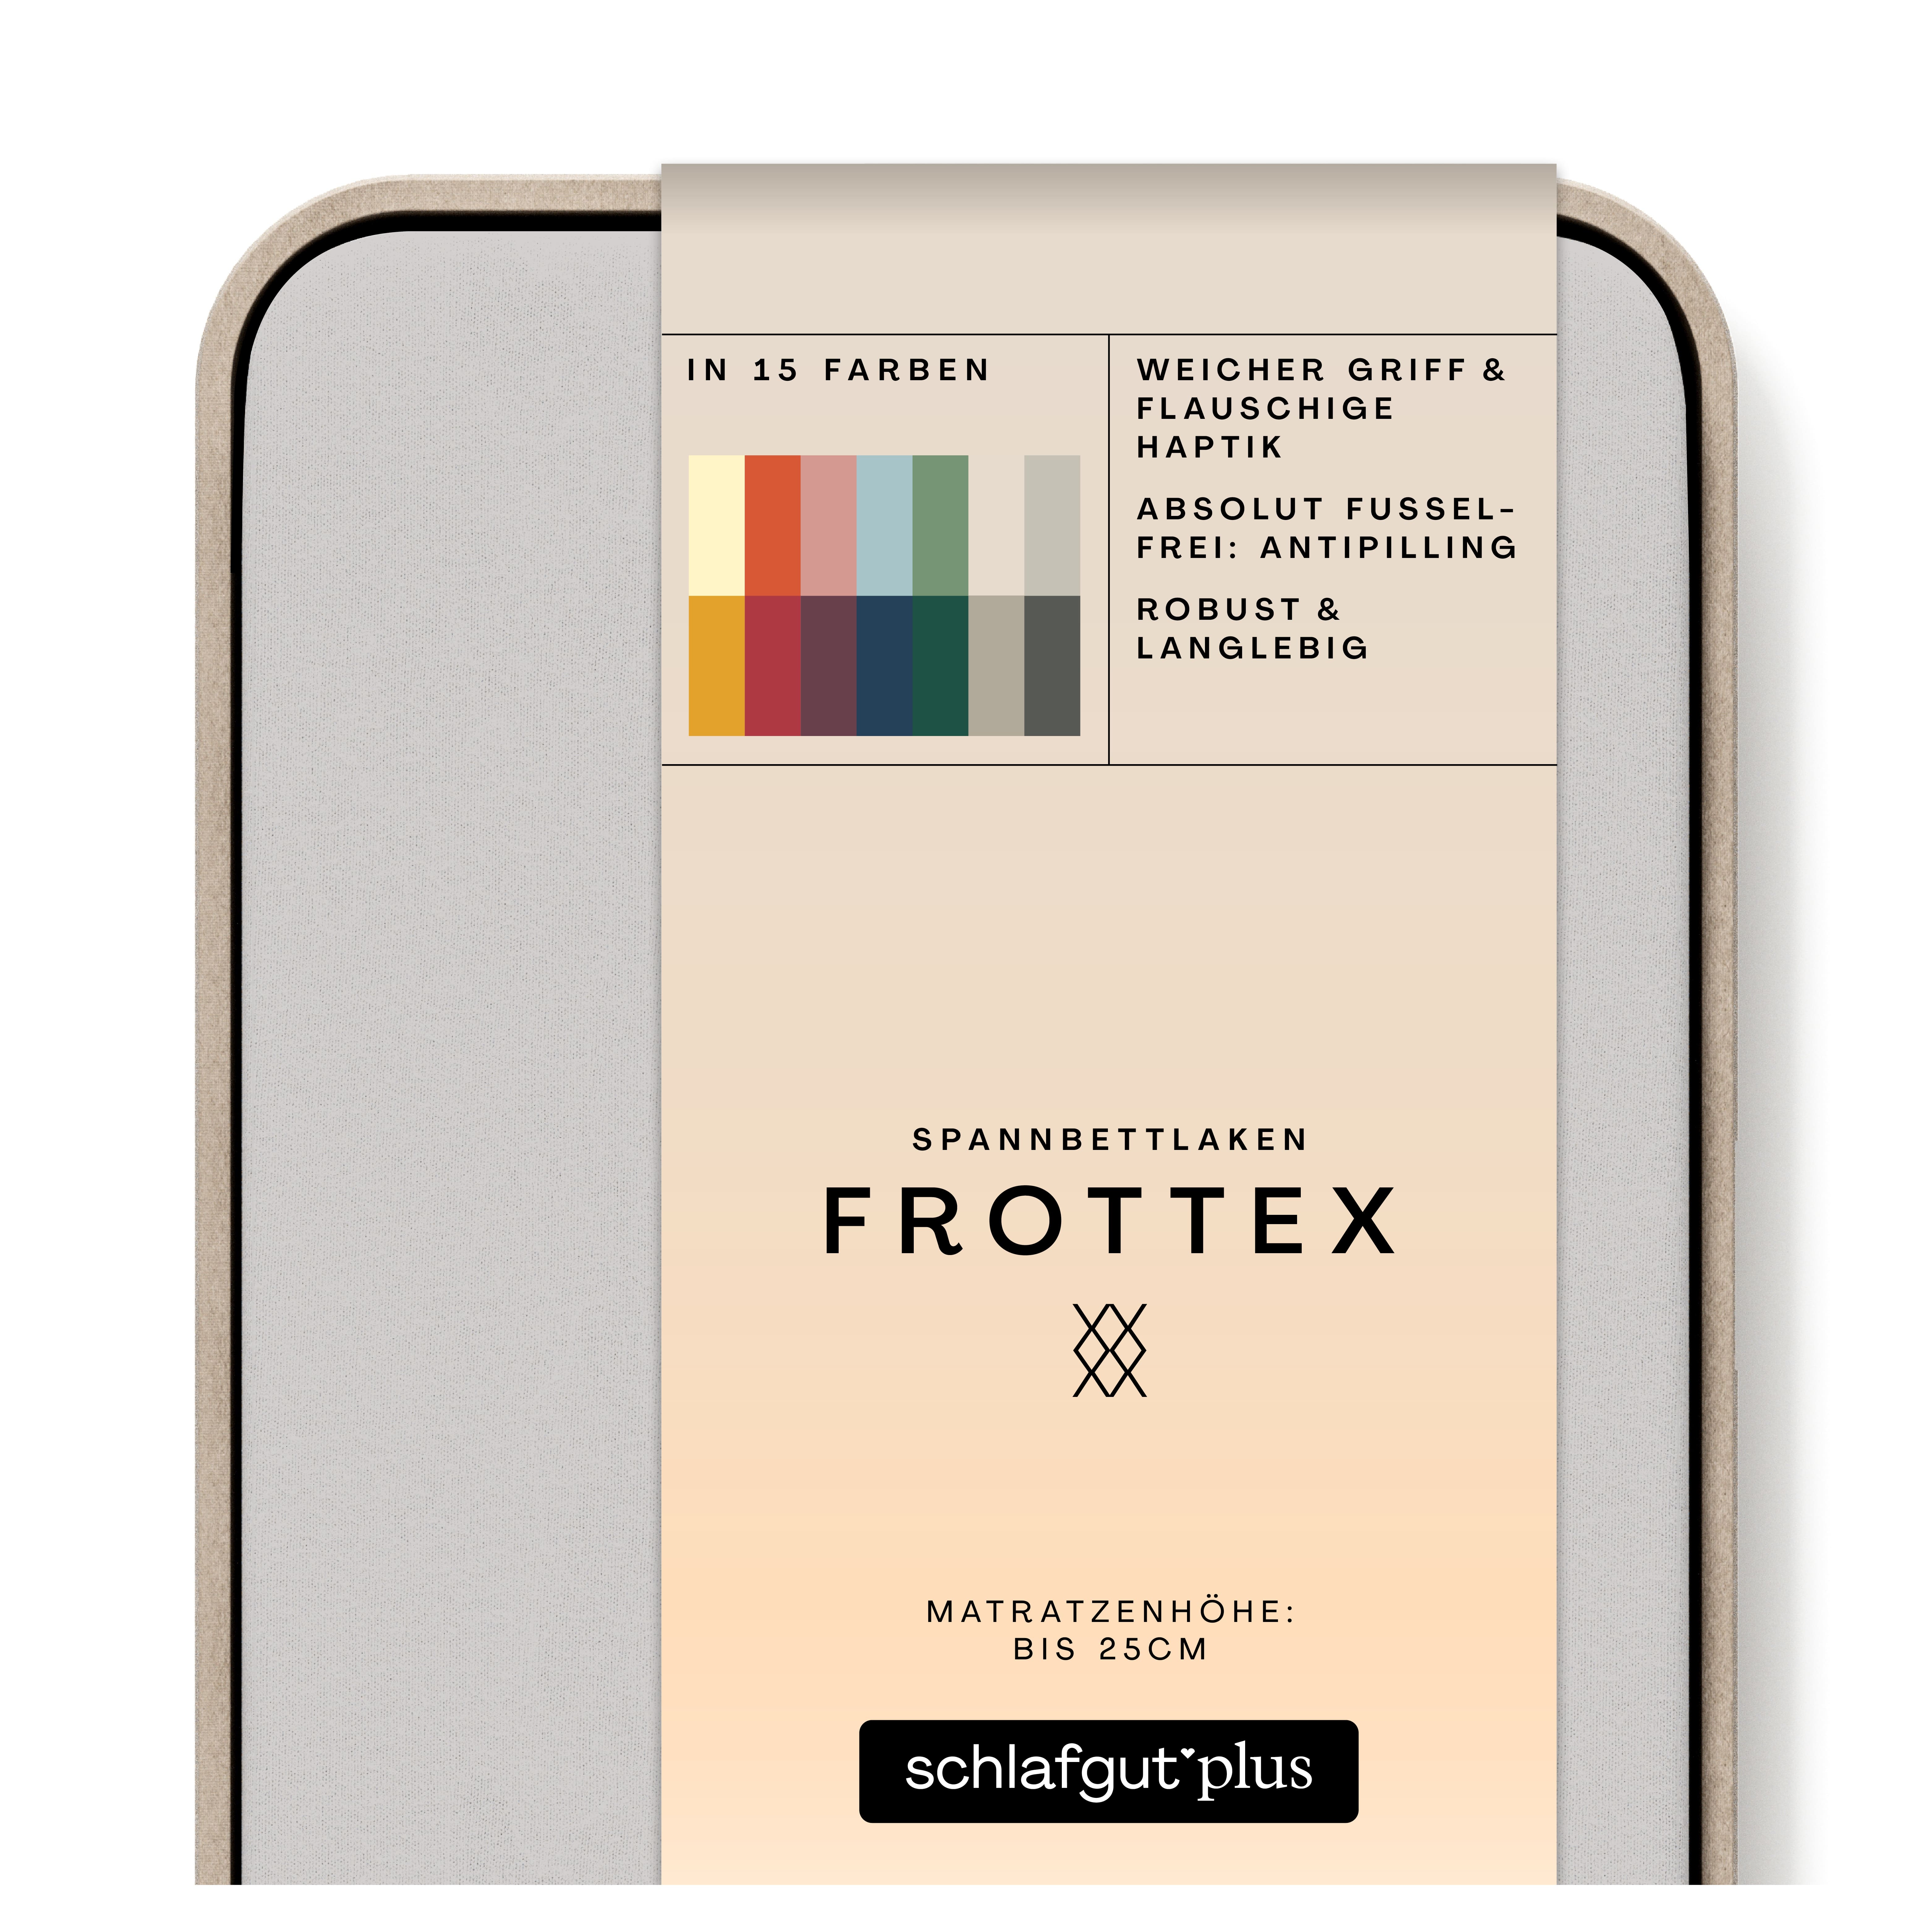 Das Produktbild vom Spannbettlaken der Reihe Frottex in Farbe grey light von Schlafgut